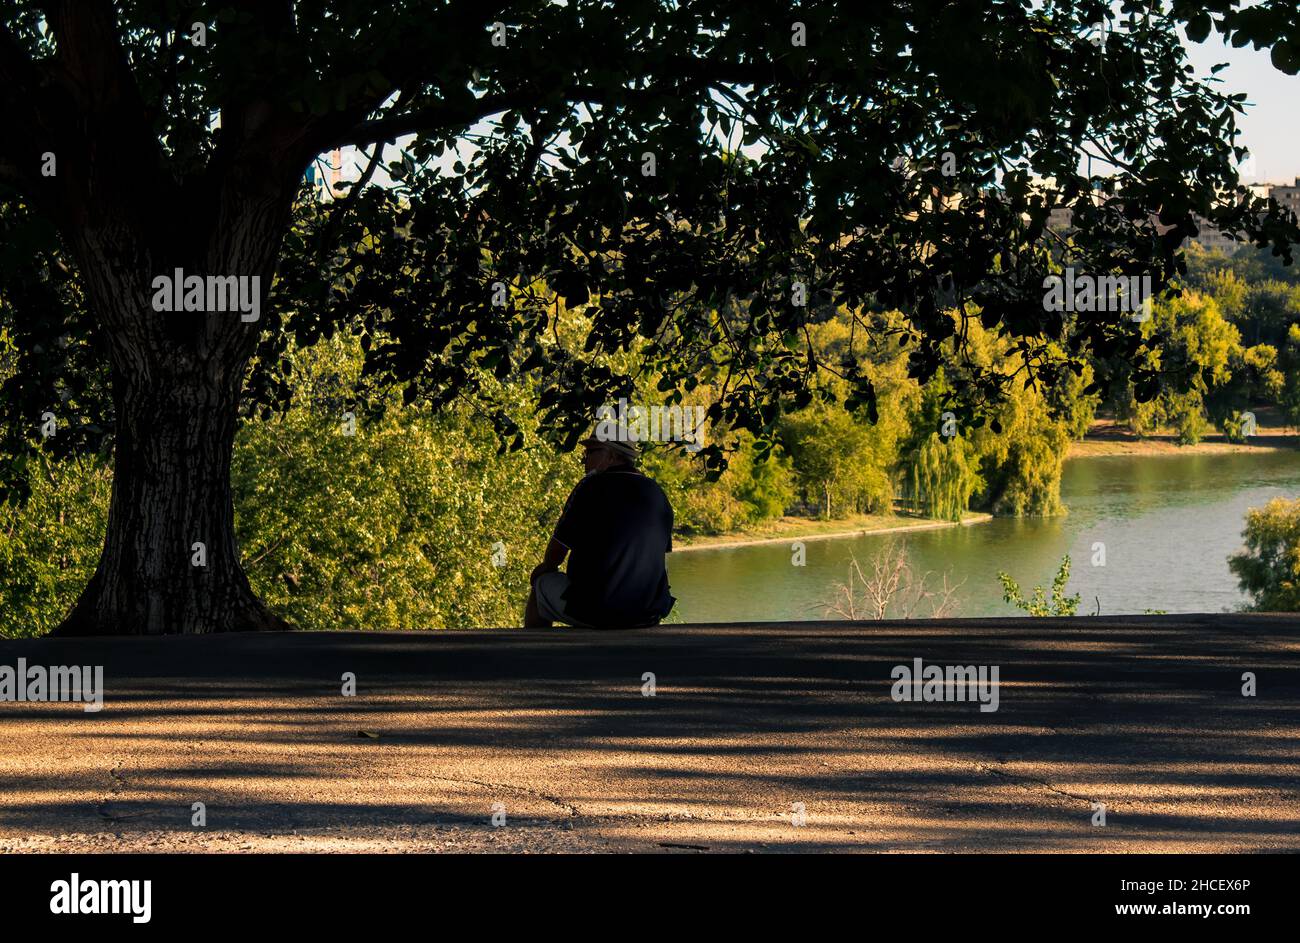 Malerische Aussicht auf einen Mann, der unter dem Baum in einem Park sitzt Stockfoto